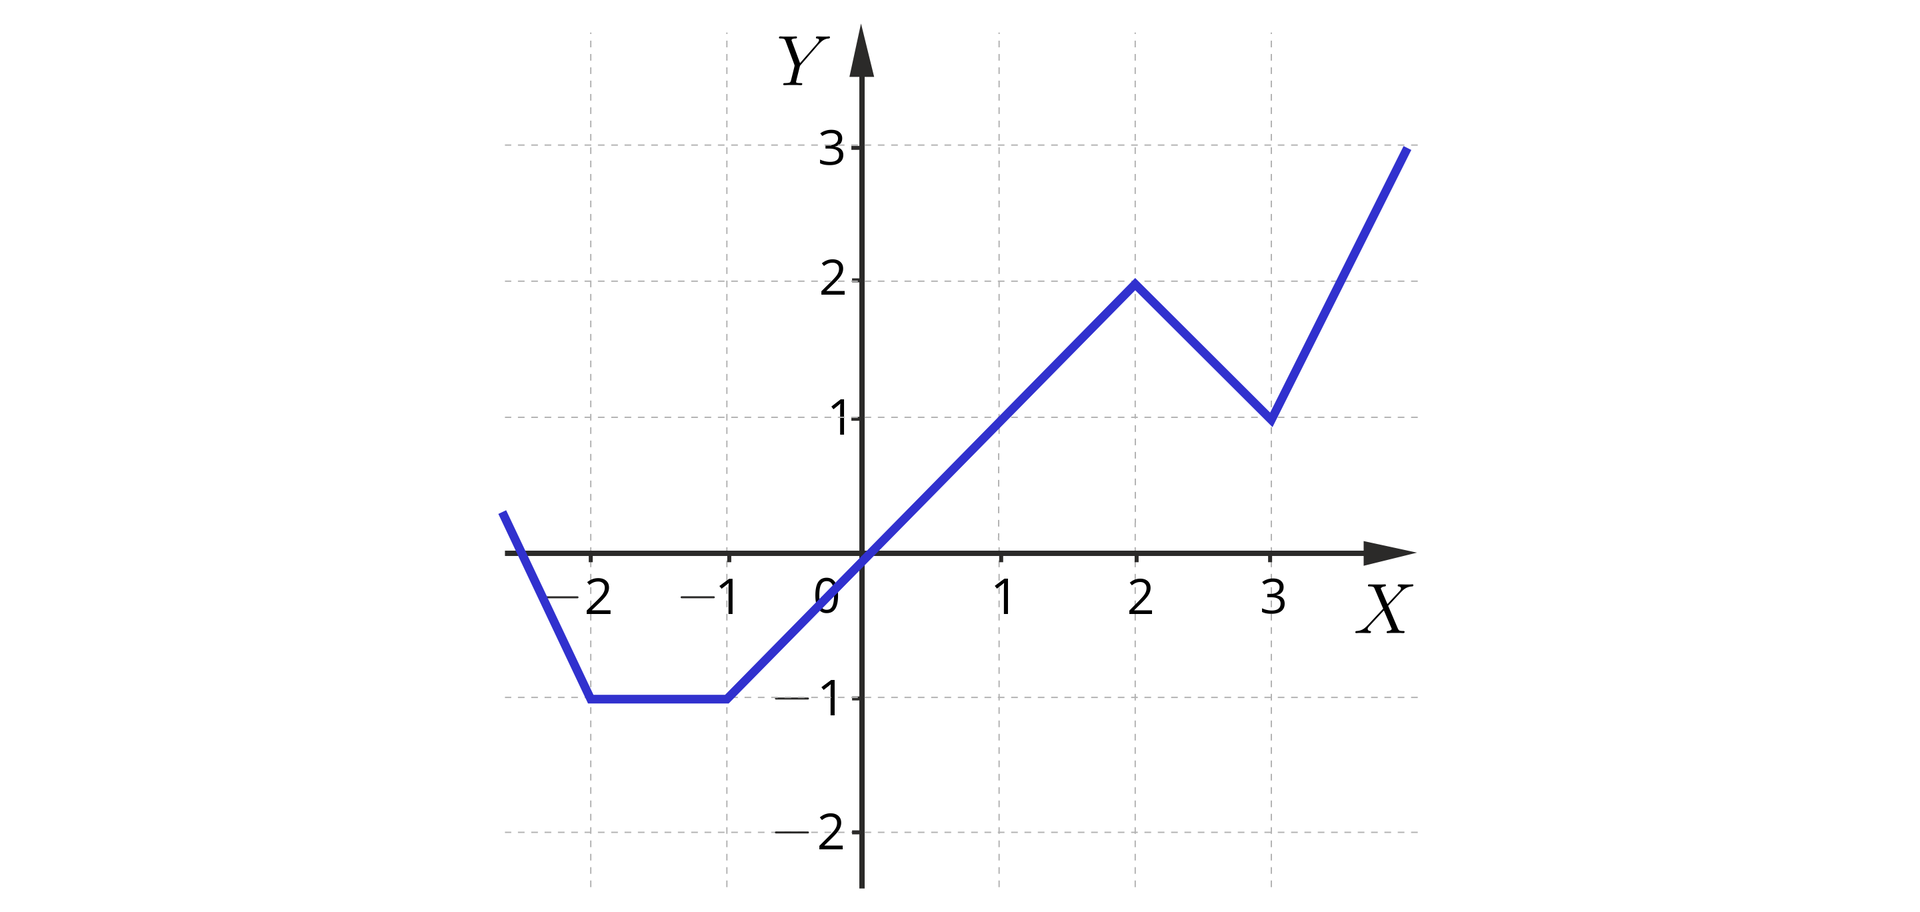 Ilustracja przedstawia układ współrzędnych z poziomą osią x od minus 2 do 3 i pionową osią y od minus 2 do trzy. W układzie zaznaczono wykres, który pojawia się na płaszczyźnie w pierwszej ćwiartce układu i biegnie ukośnie do punktu nawias minus dwa średnik minus jeden zamknięcie nawiasu, następnie biegnie poziomo do punktu nawias minus jeden średnik minus jeden zamknięcie nawiasu, dalej biegnie ukośnie przez środek układu współrzędnych do punktu nawias dwa średnik dwa zamknięcie nawiasu. Dalej biegnie ukośnie do punktu nawias trzy średnik jeden zamknięcie nawiasu, gdzie zmienia swój bieg i biegnie ukośnie przez punkt nawias cztery średnik trzy poza płaszczyznę układu współrzędnych.